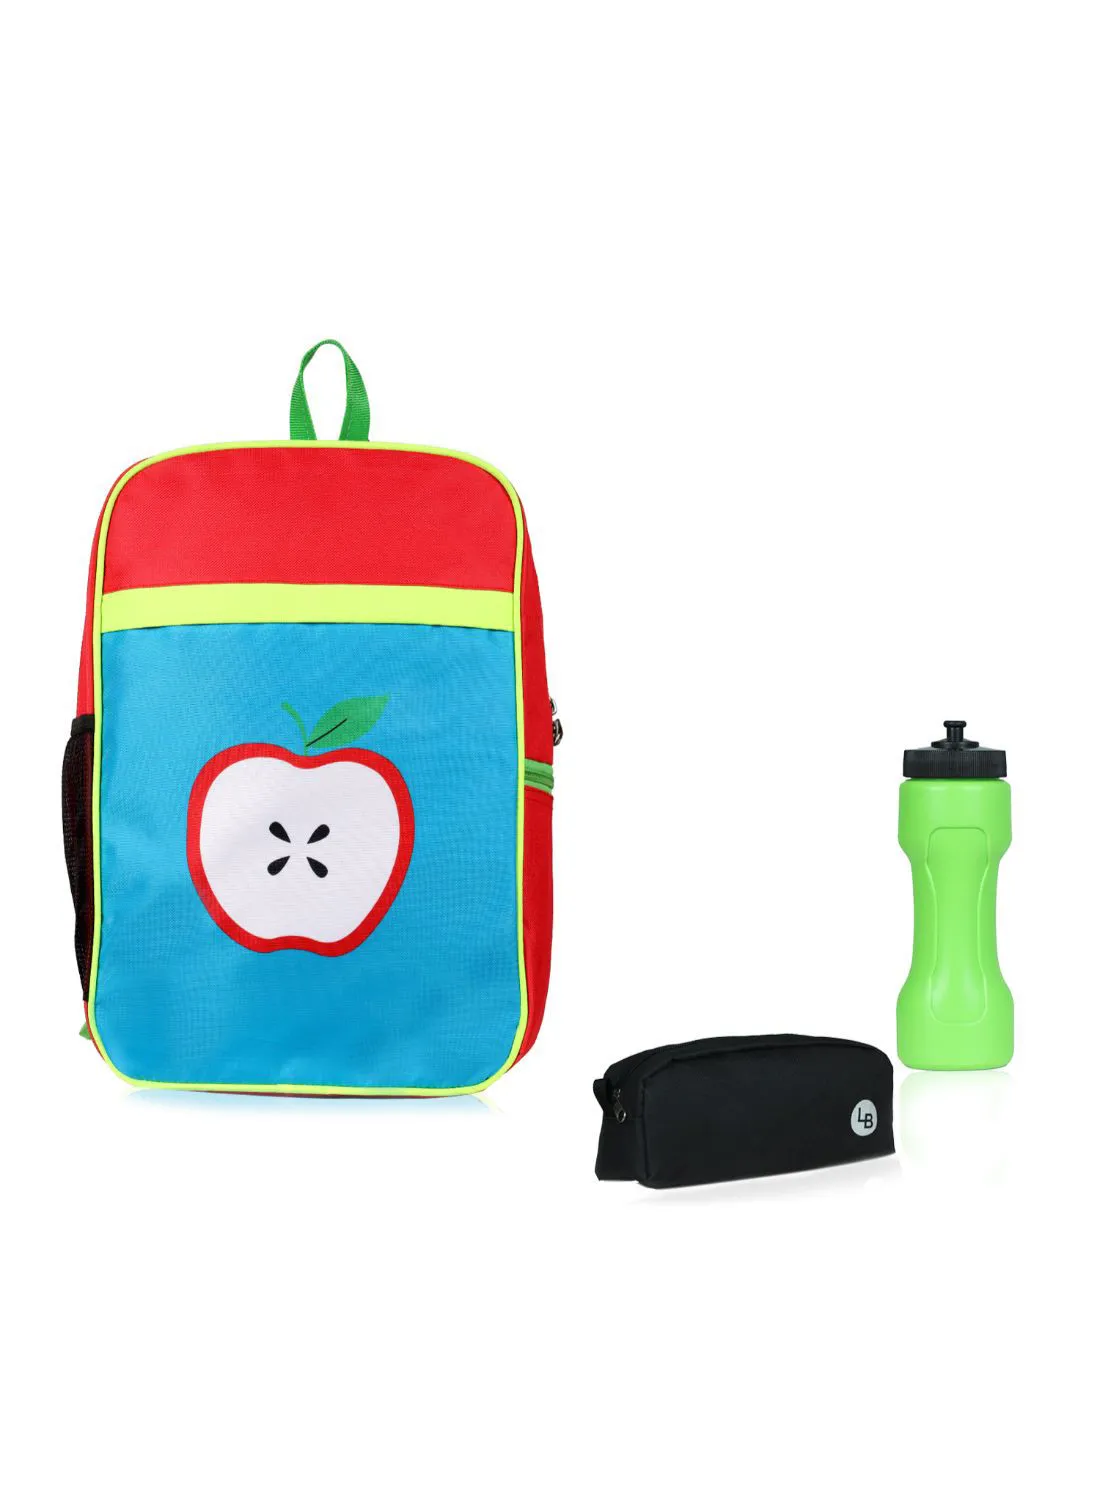 حقيبة ظهر LIONBONE Apple من البوليستر للأطفال مع إغلاق بسحاب مثالية للفئة العمرية من 6 إلى 8 سنوات ، وحقيبة من البلاستيك وحقيبة بوليستر متعدد الألوان